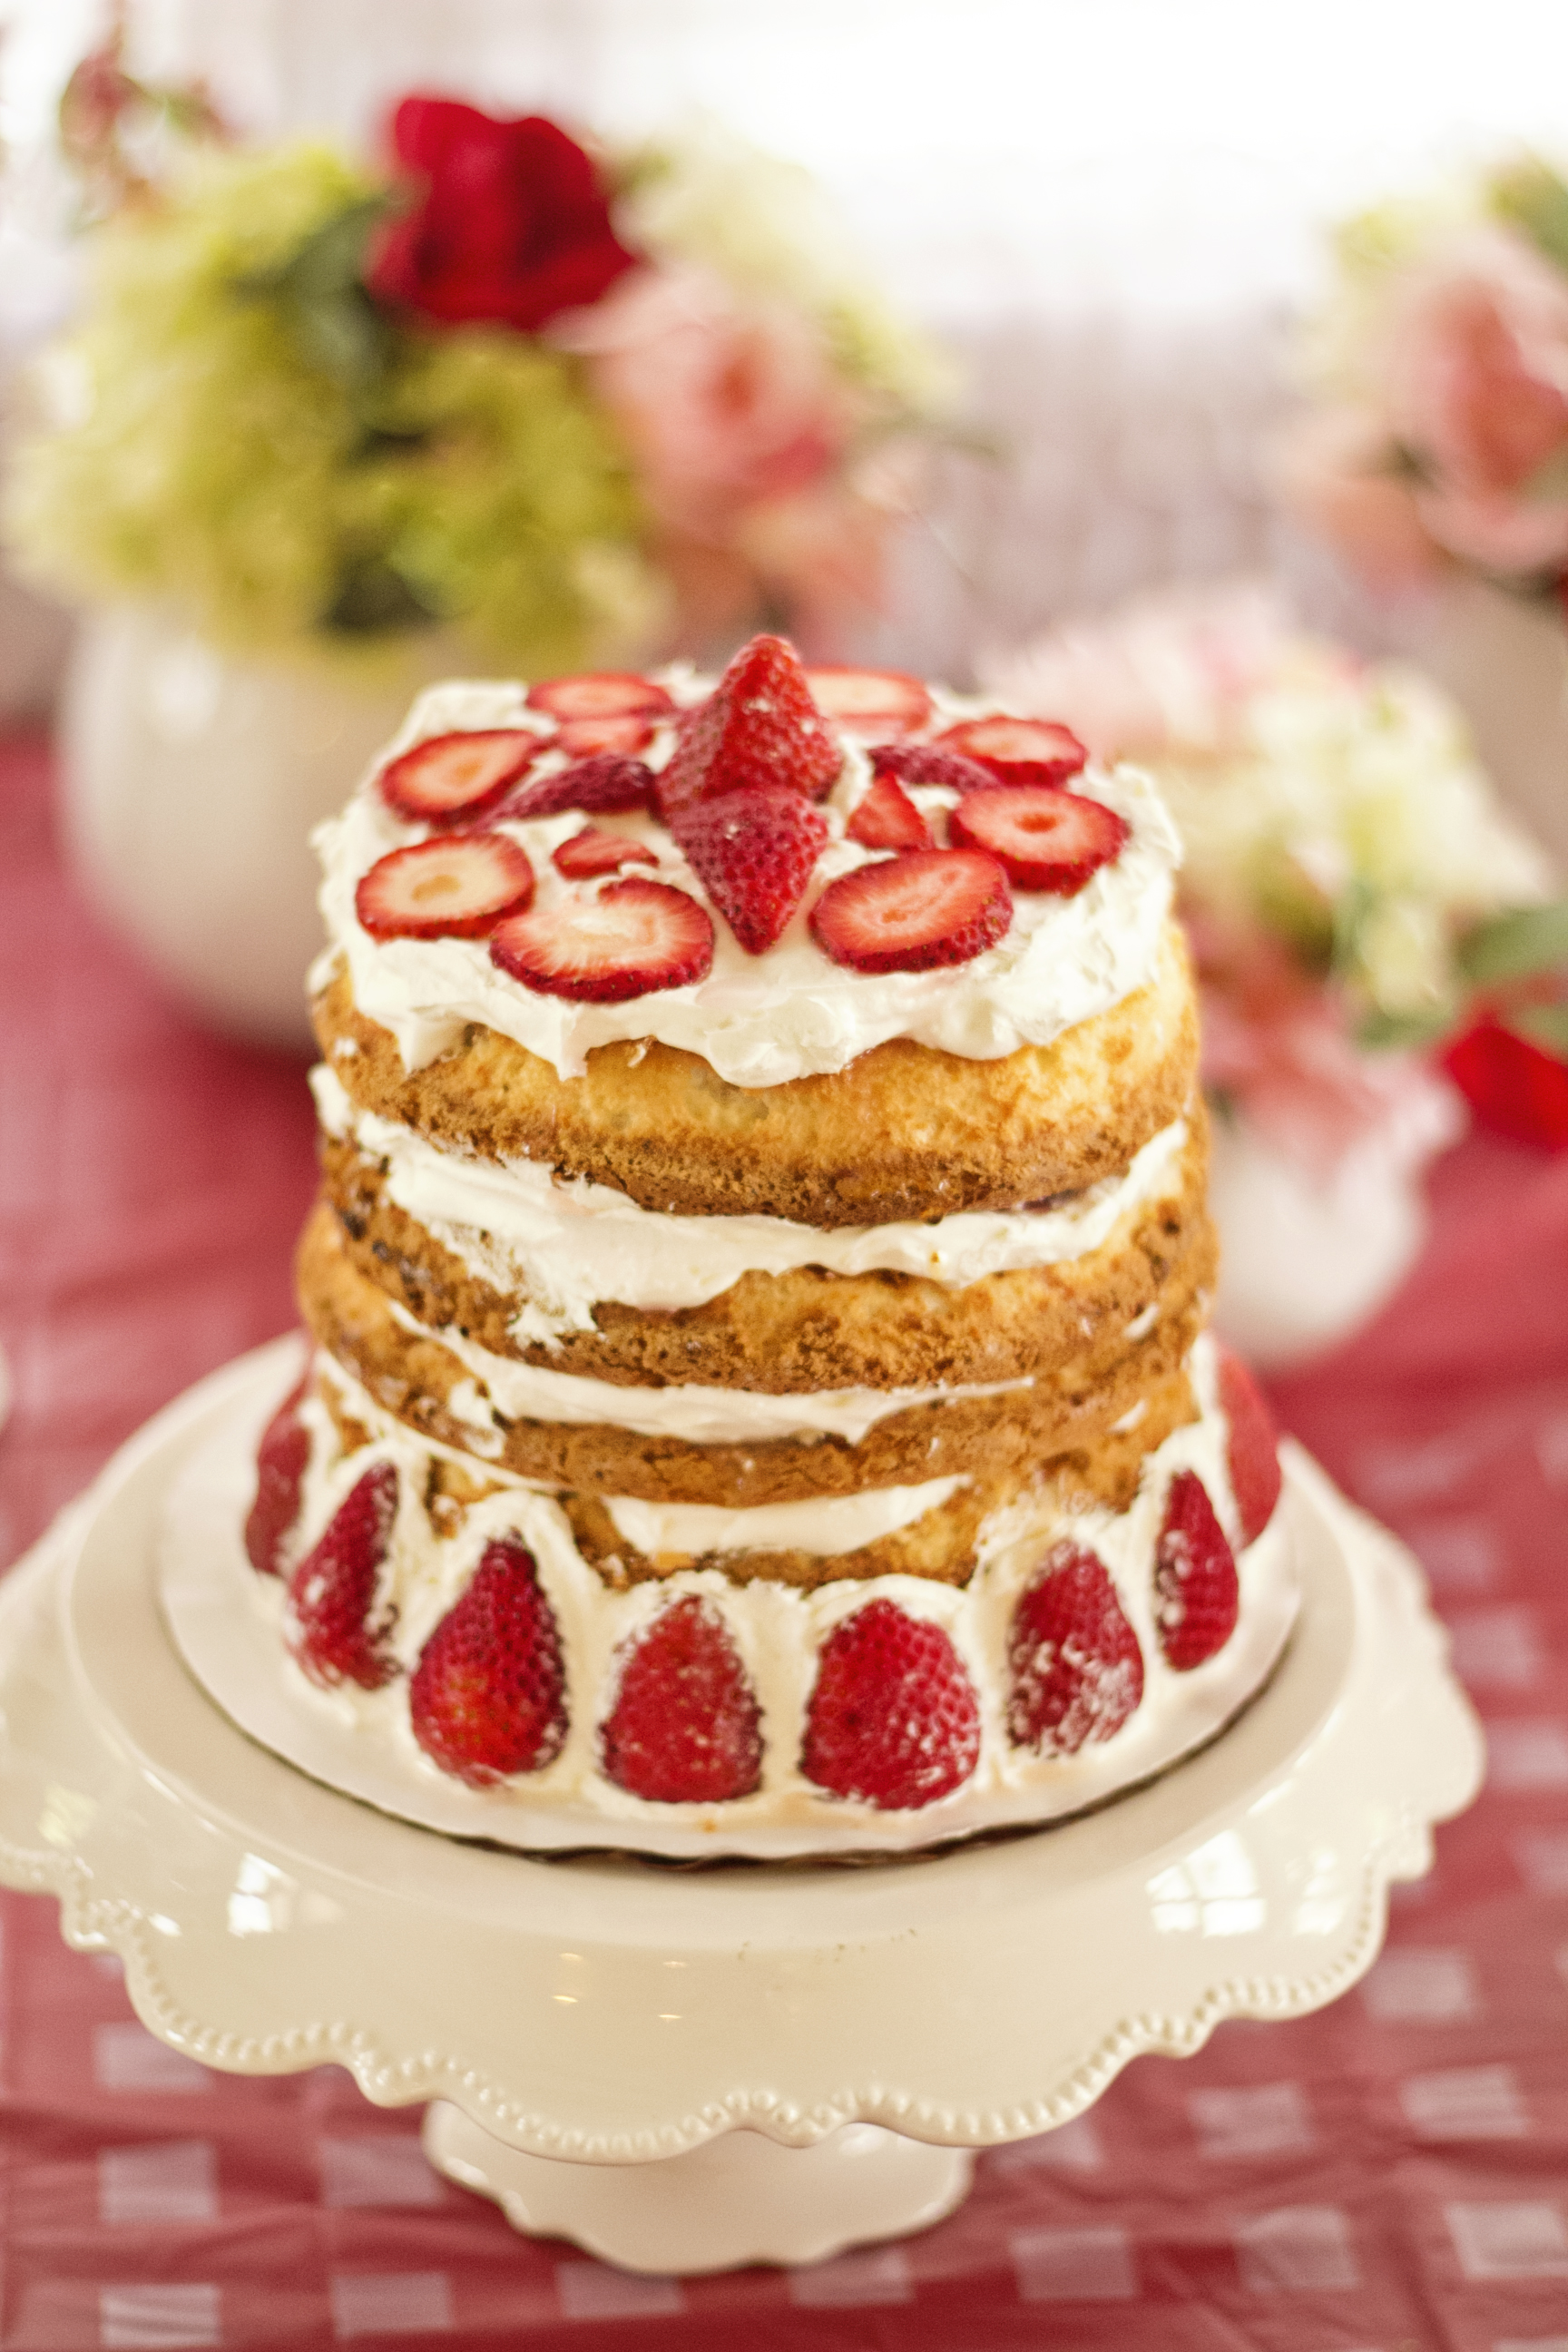 Strawberry Shortcake for this Strawberry Shortcake Birthday Party